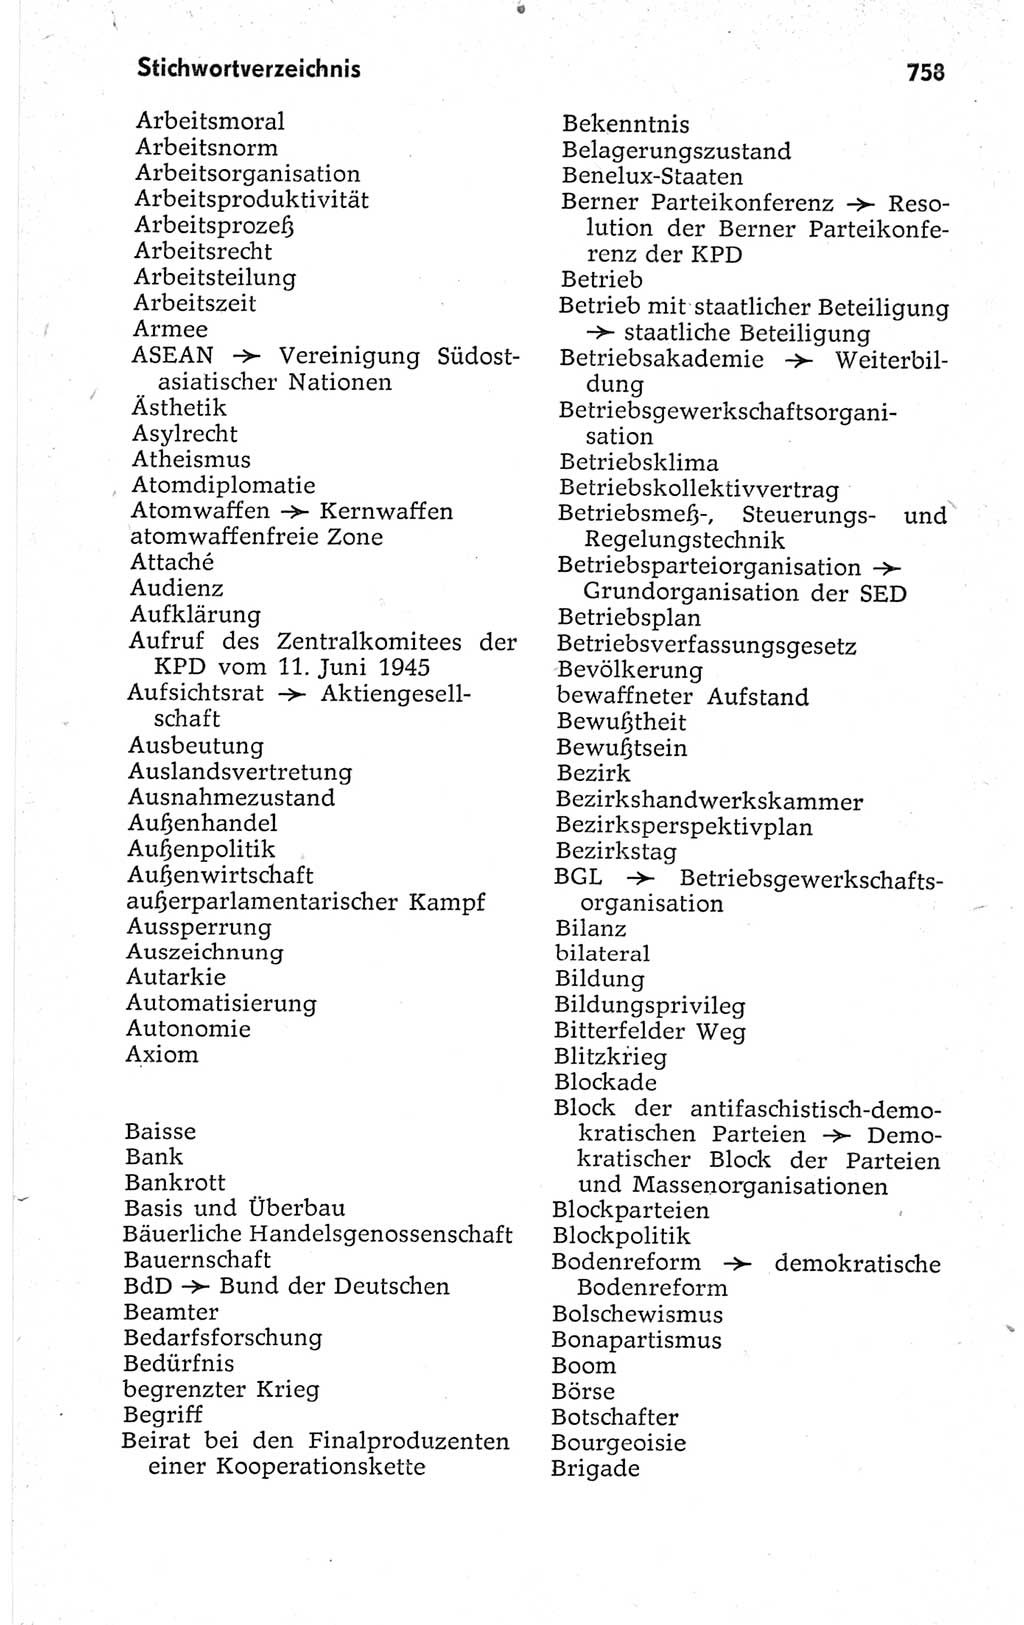 Kleines politisches Wörterbuch [Deutsche Demokratische Republik (DDR)] 1967, Seite 758 (Kl. pol. Wb. DDR 1967, S. 758)